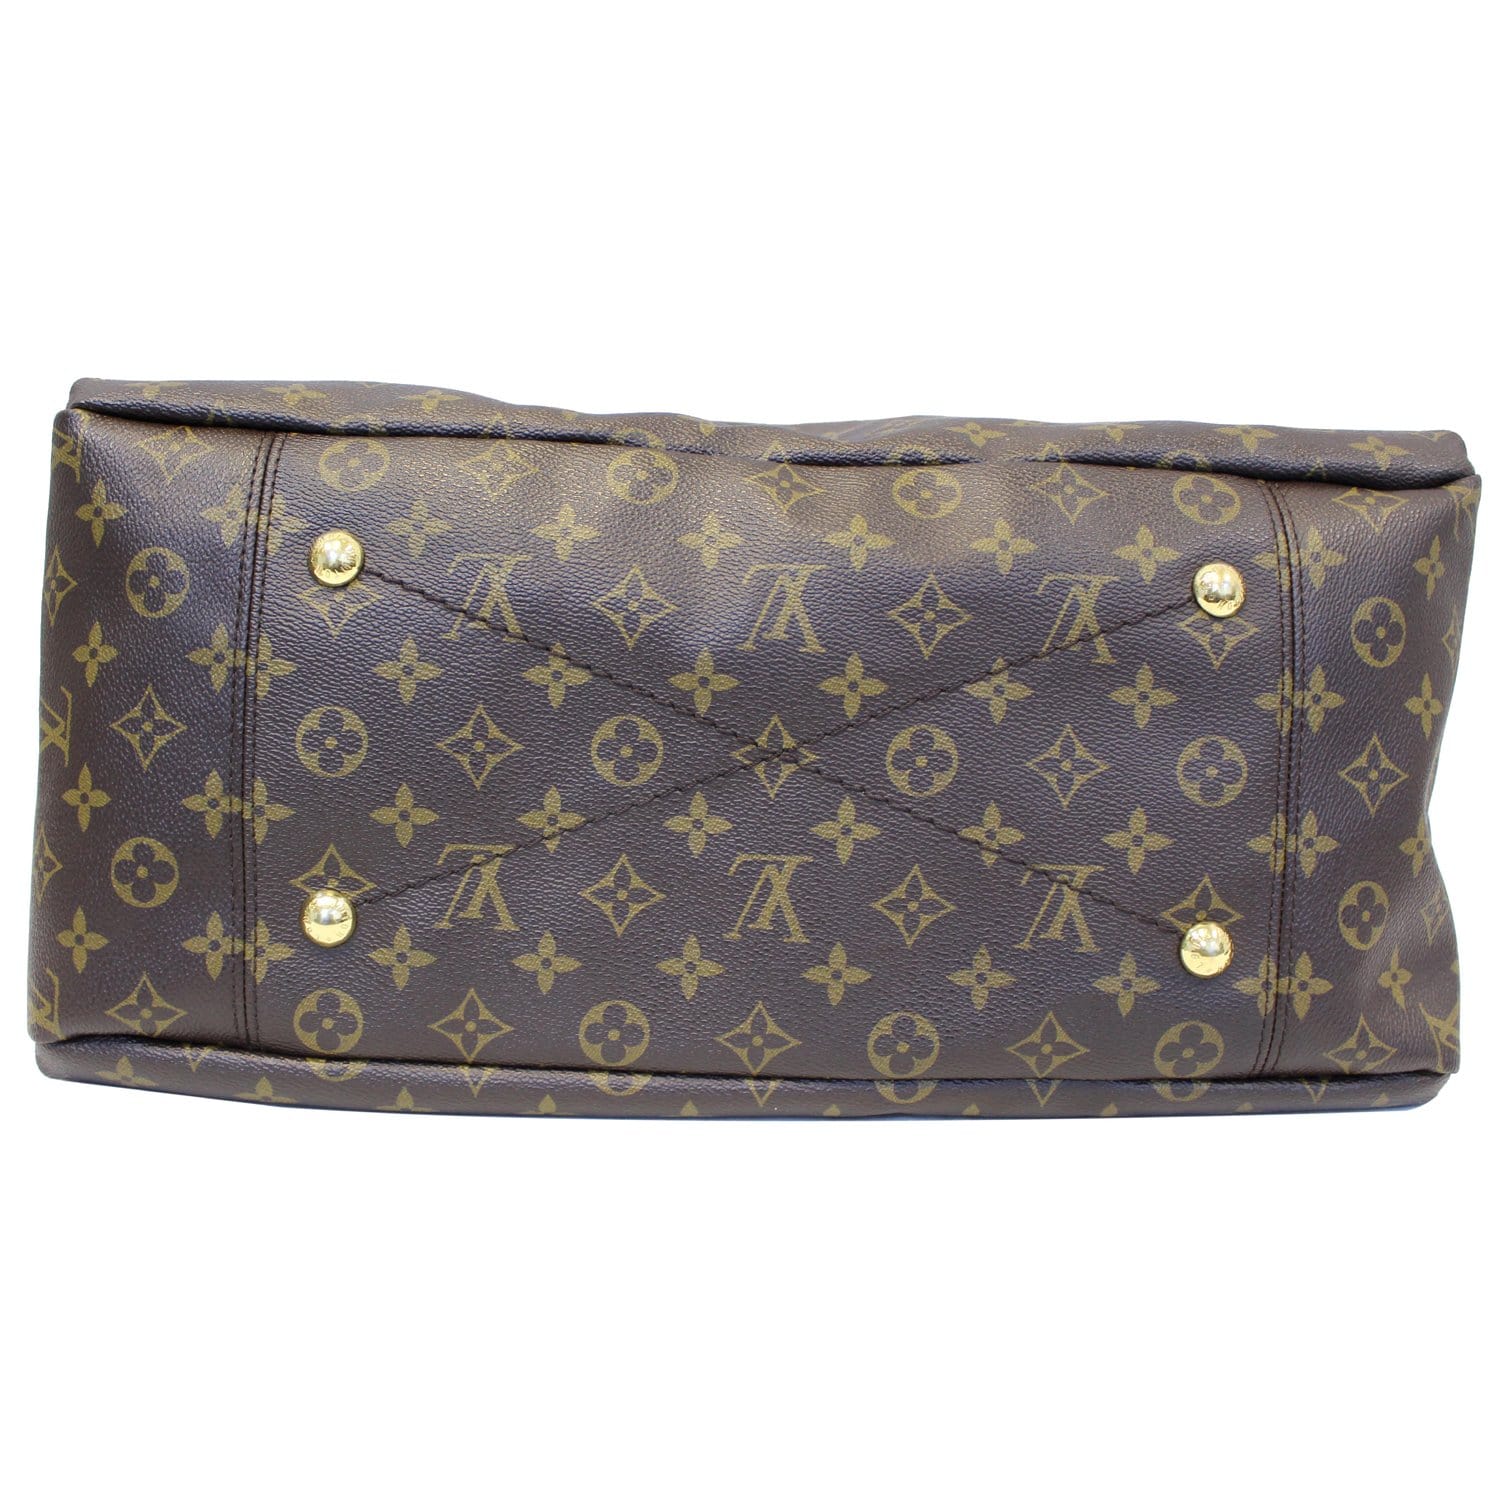 Louis Vuitton Artsy MM Monogram Shoulder Bag - Lv Artsy